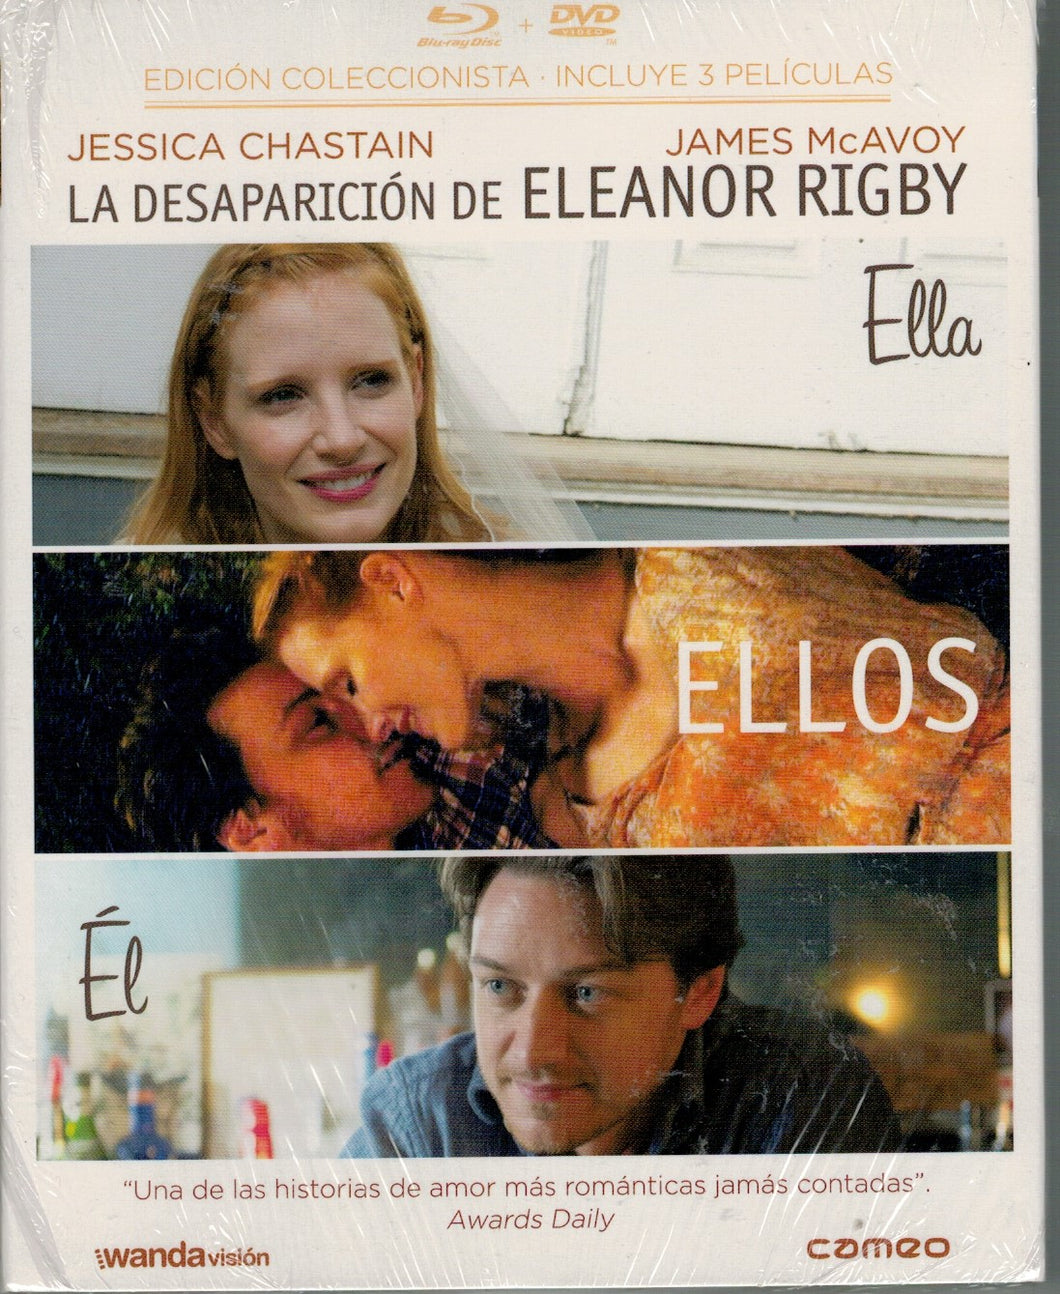 La desaparicion de Eleanor Rigby : Ellos, Ella, Él (Edición Coleccionista Blu Ray + DVD Nuevo)